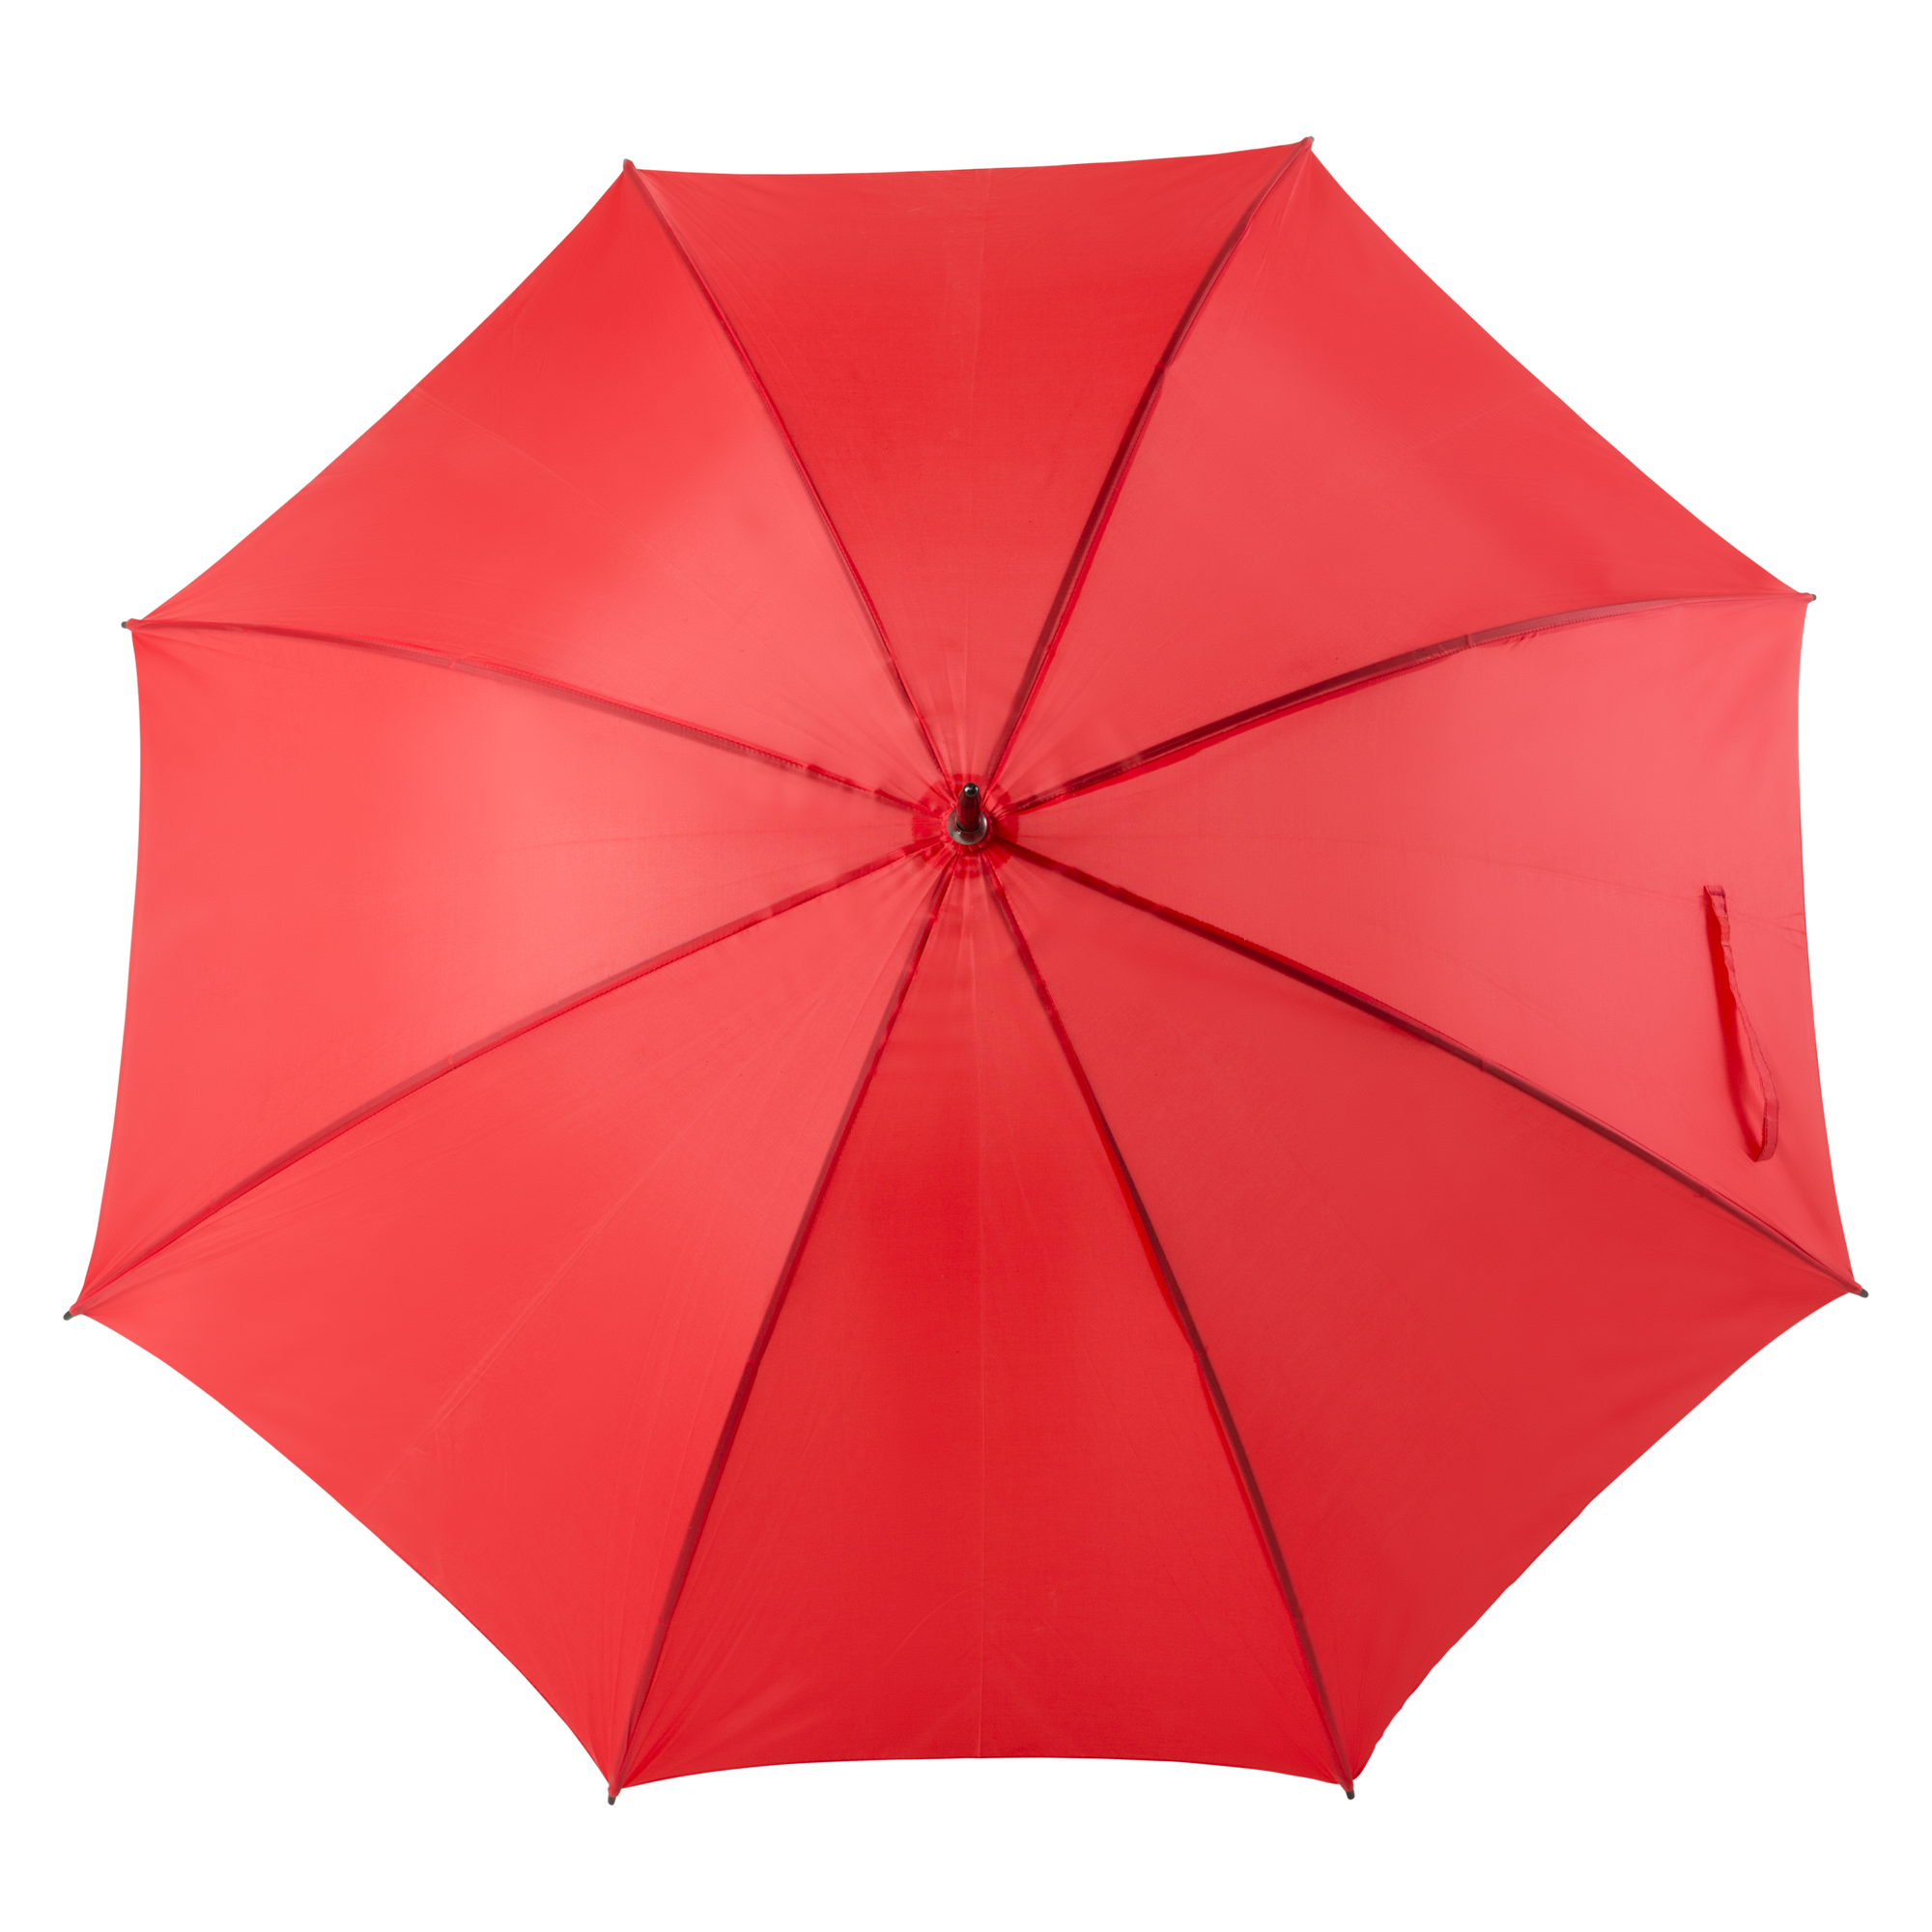 Umbrella rental - red